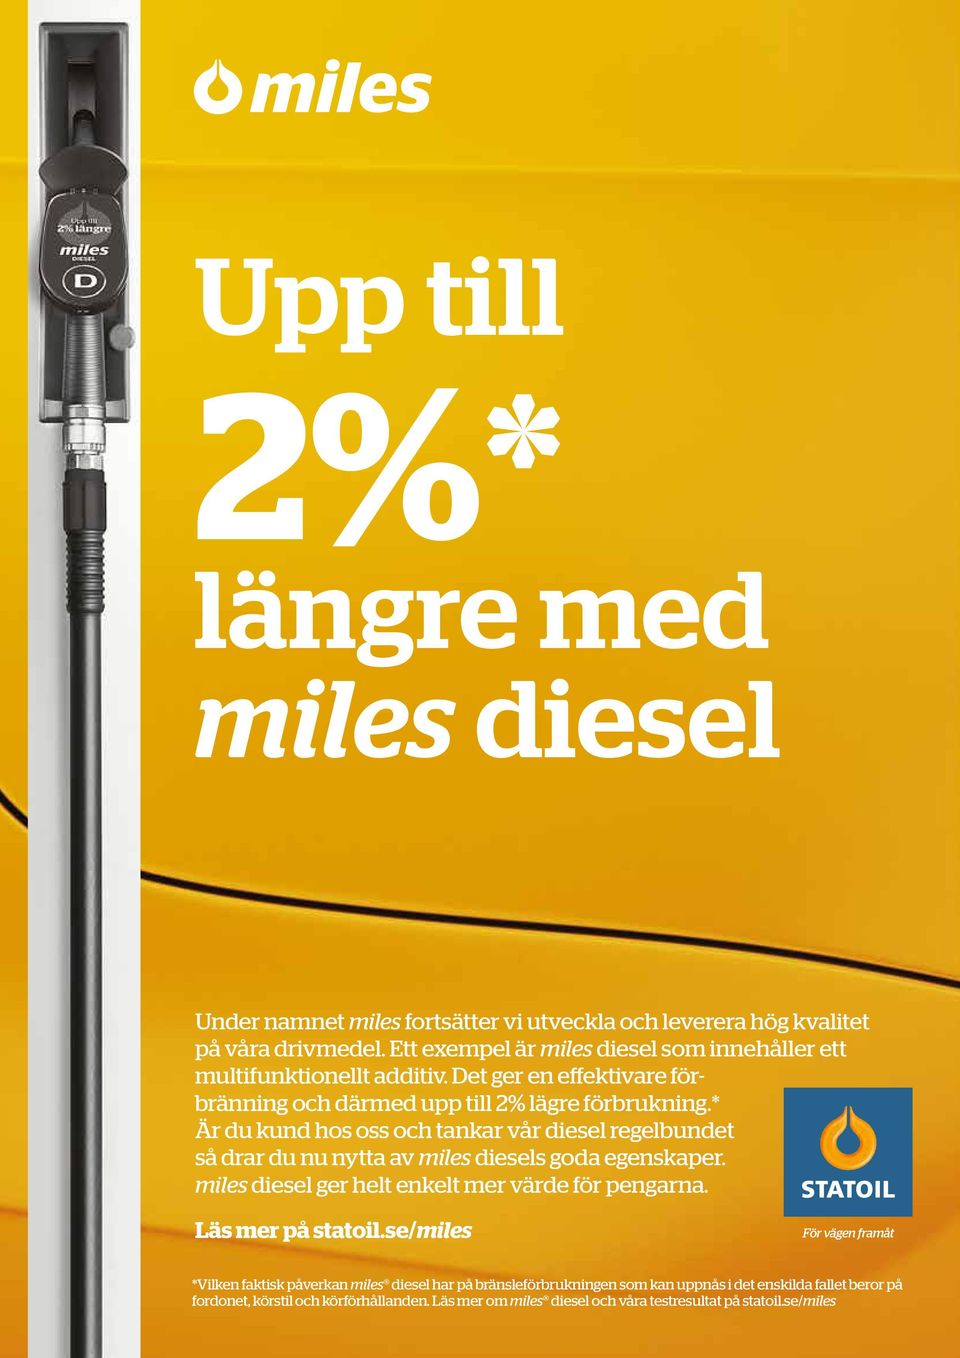 * Är du kund hos oss och tankar vår diesel regelbundet så drar du nu nytta av miles diesels goda egenskaper. miles diesel ger helt enkelt mer värde för pengarna.